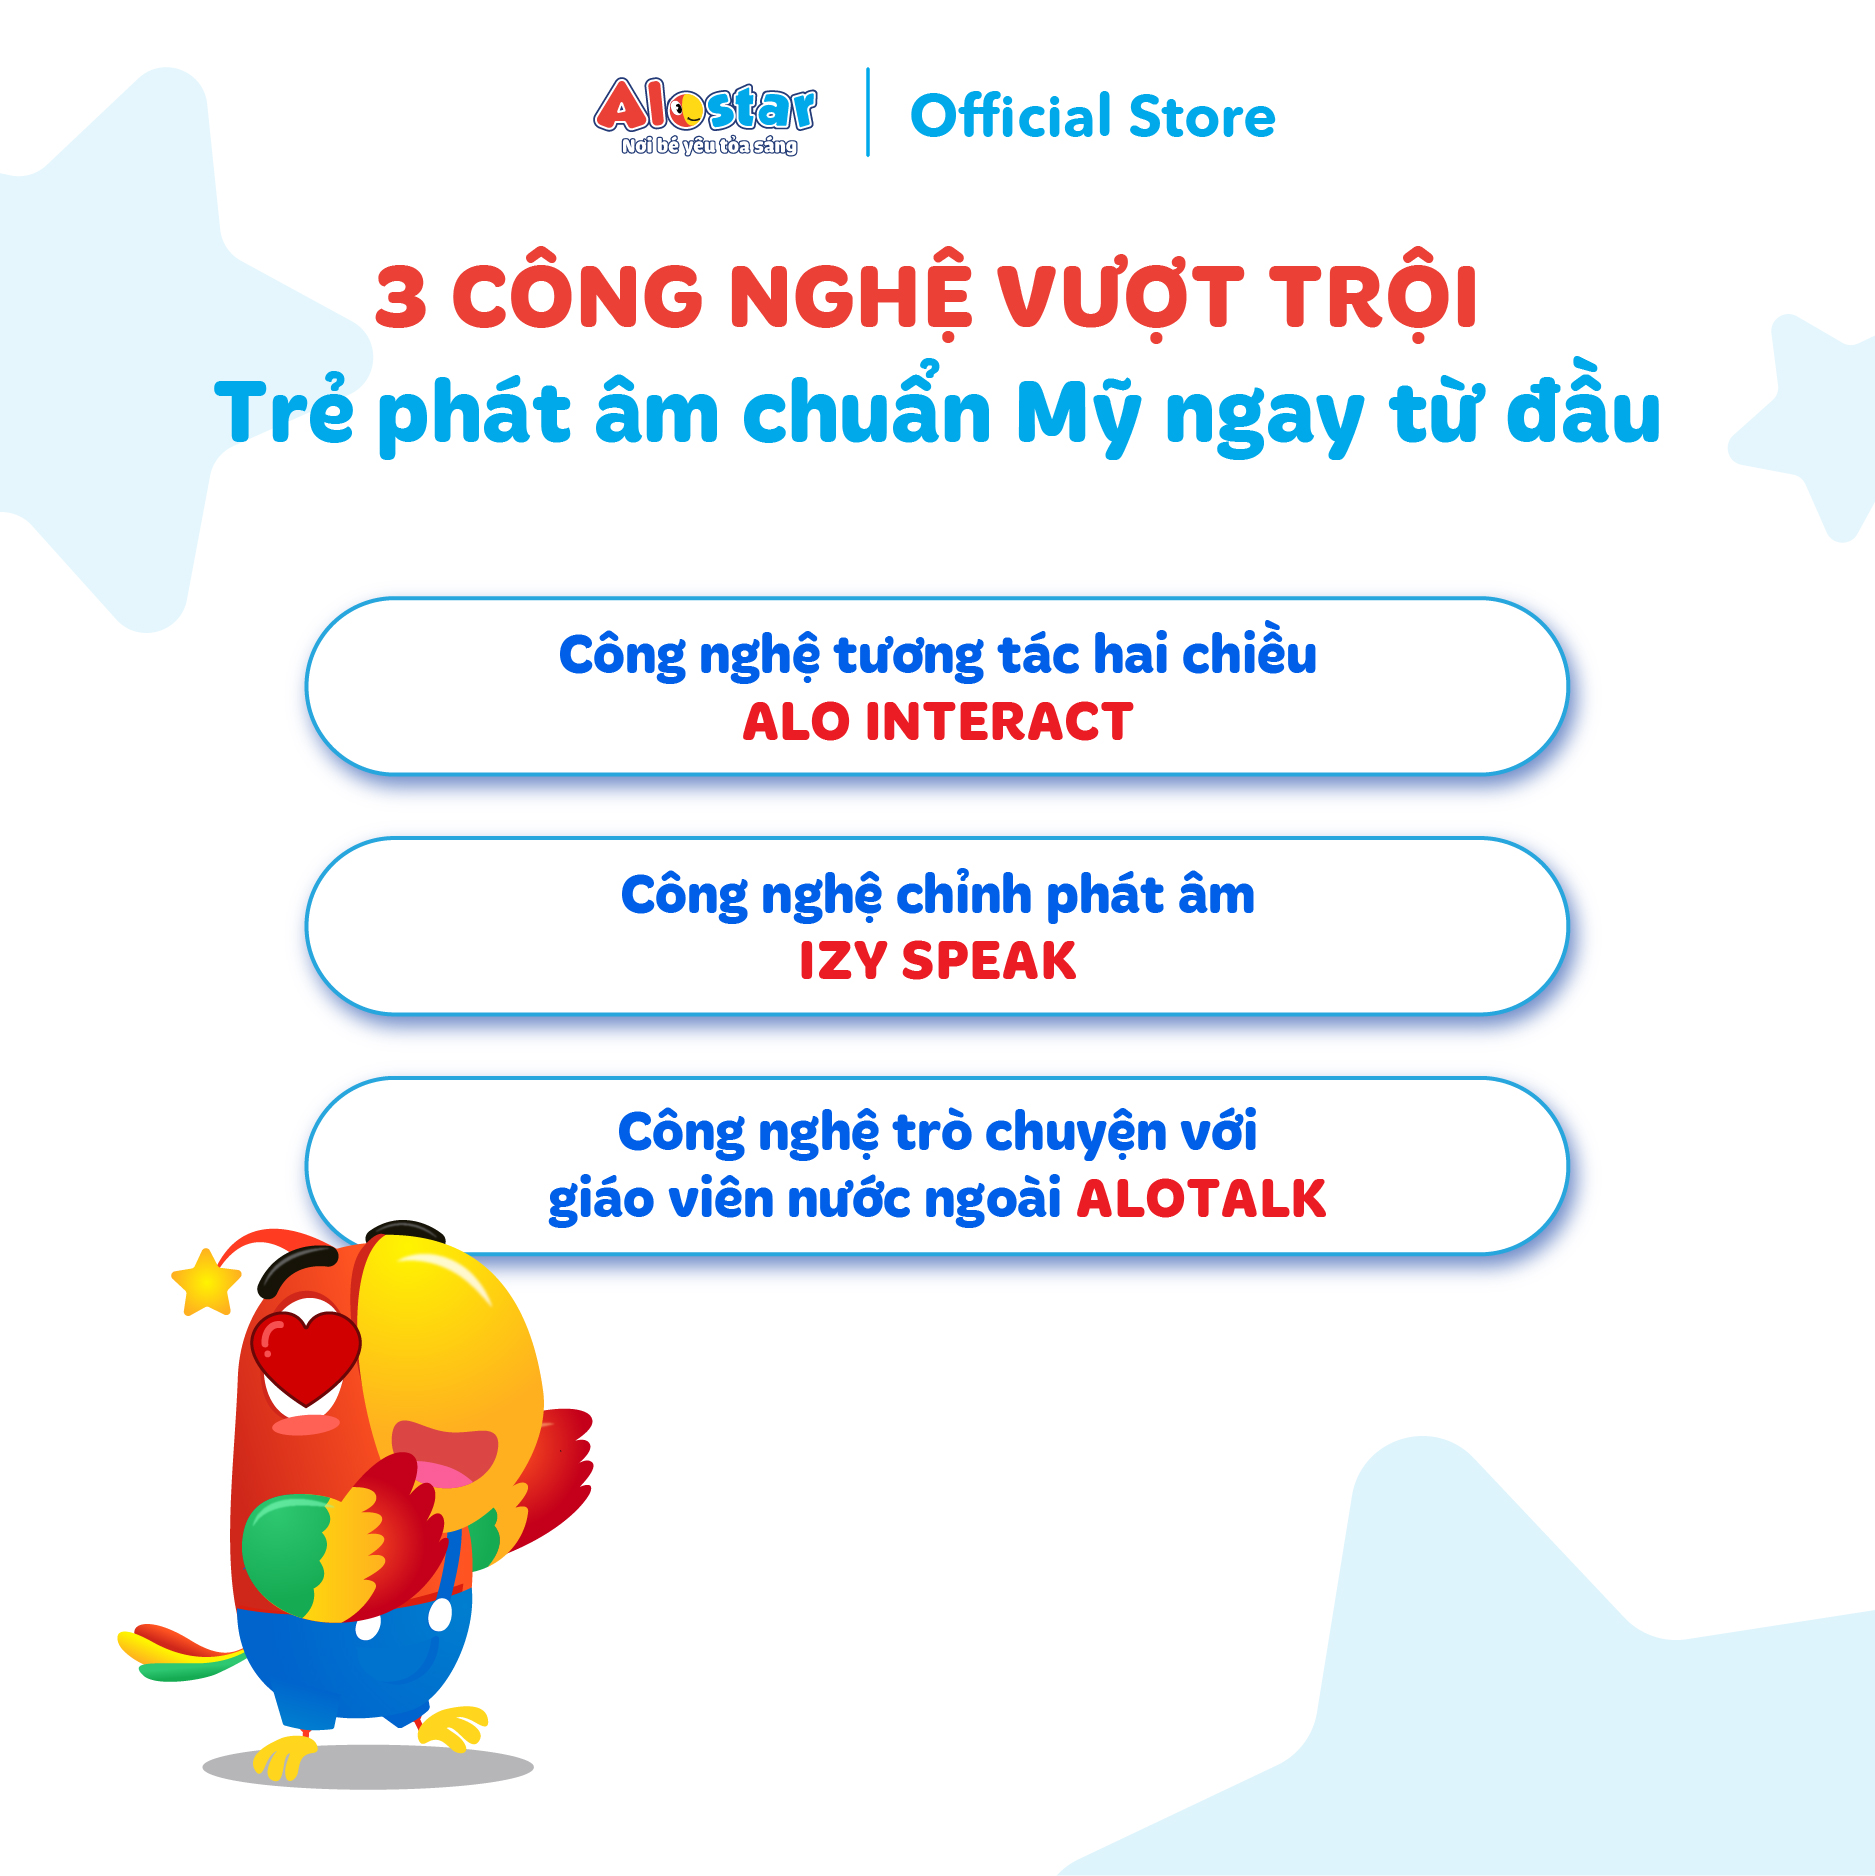 [Gói 5 năm] ALOSTAR - Mã kích hoạt app học tiếng Anh cho trẻ 2-7 tuổi Áp dụng trên toàn quốc